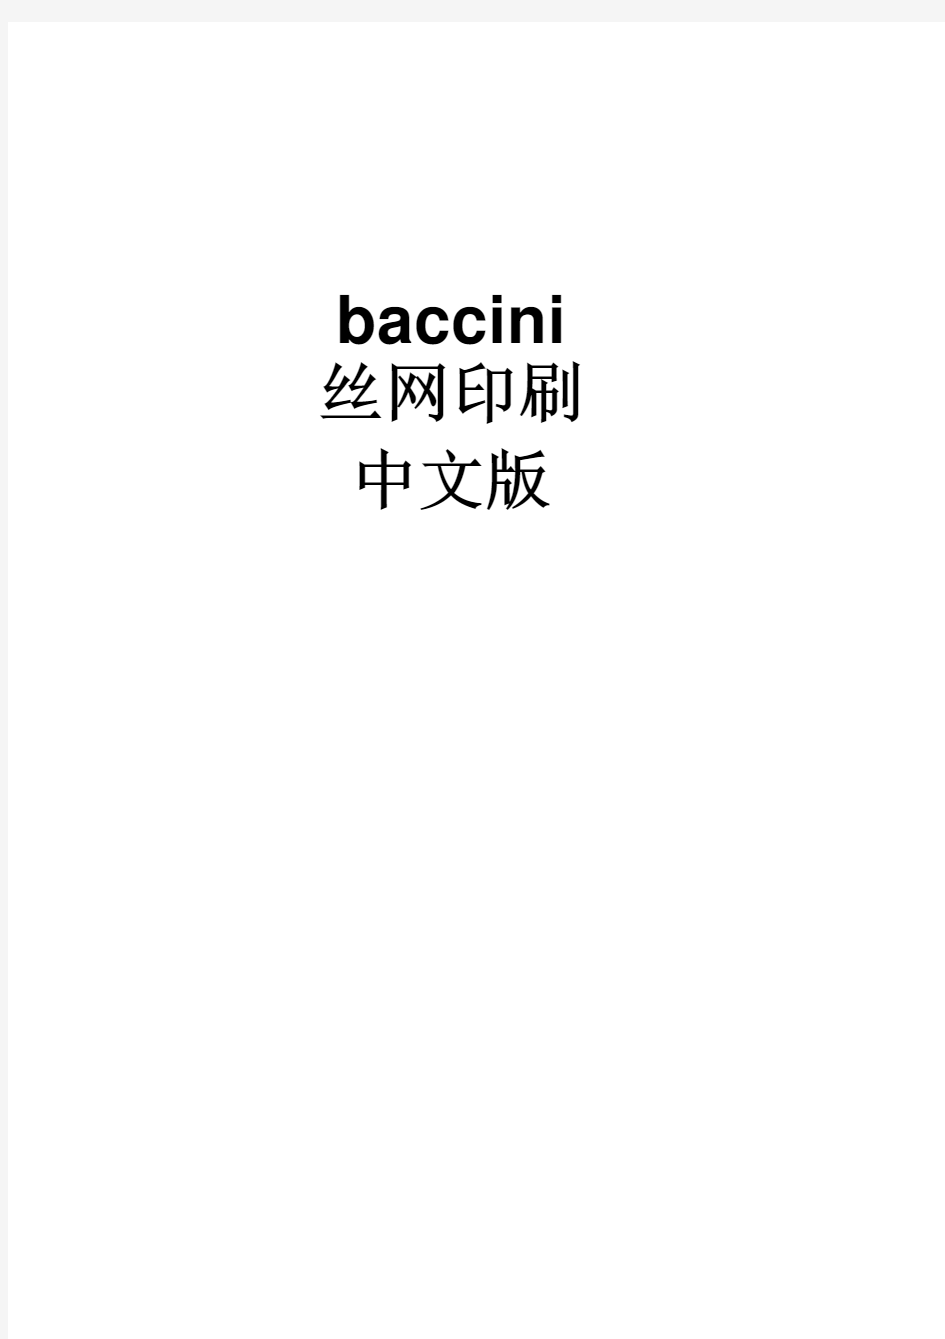 Baccini丝网印刷机中文使用说明书